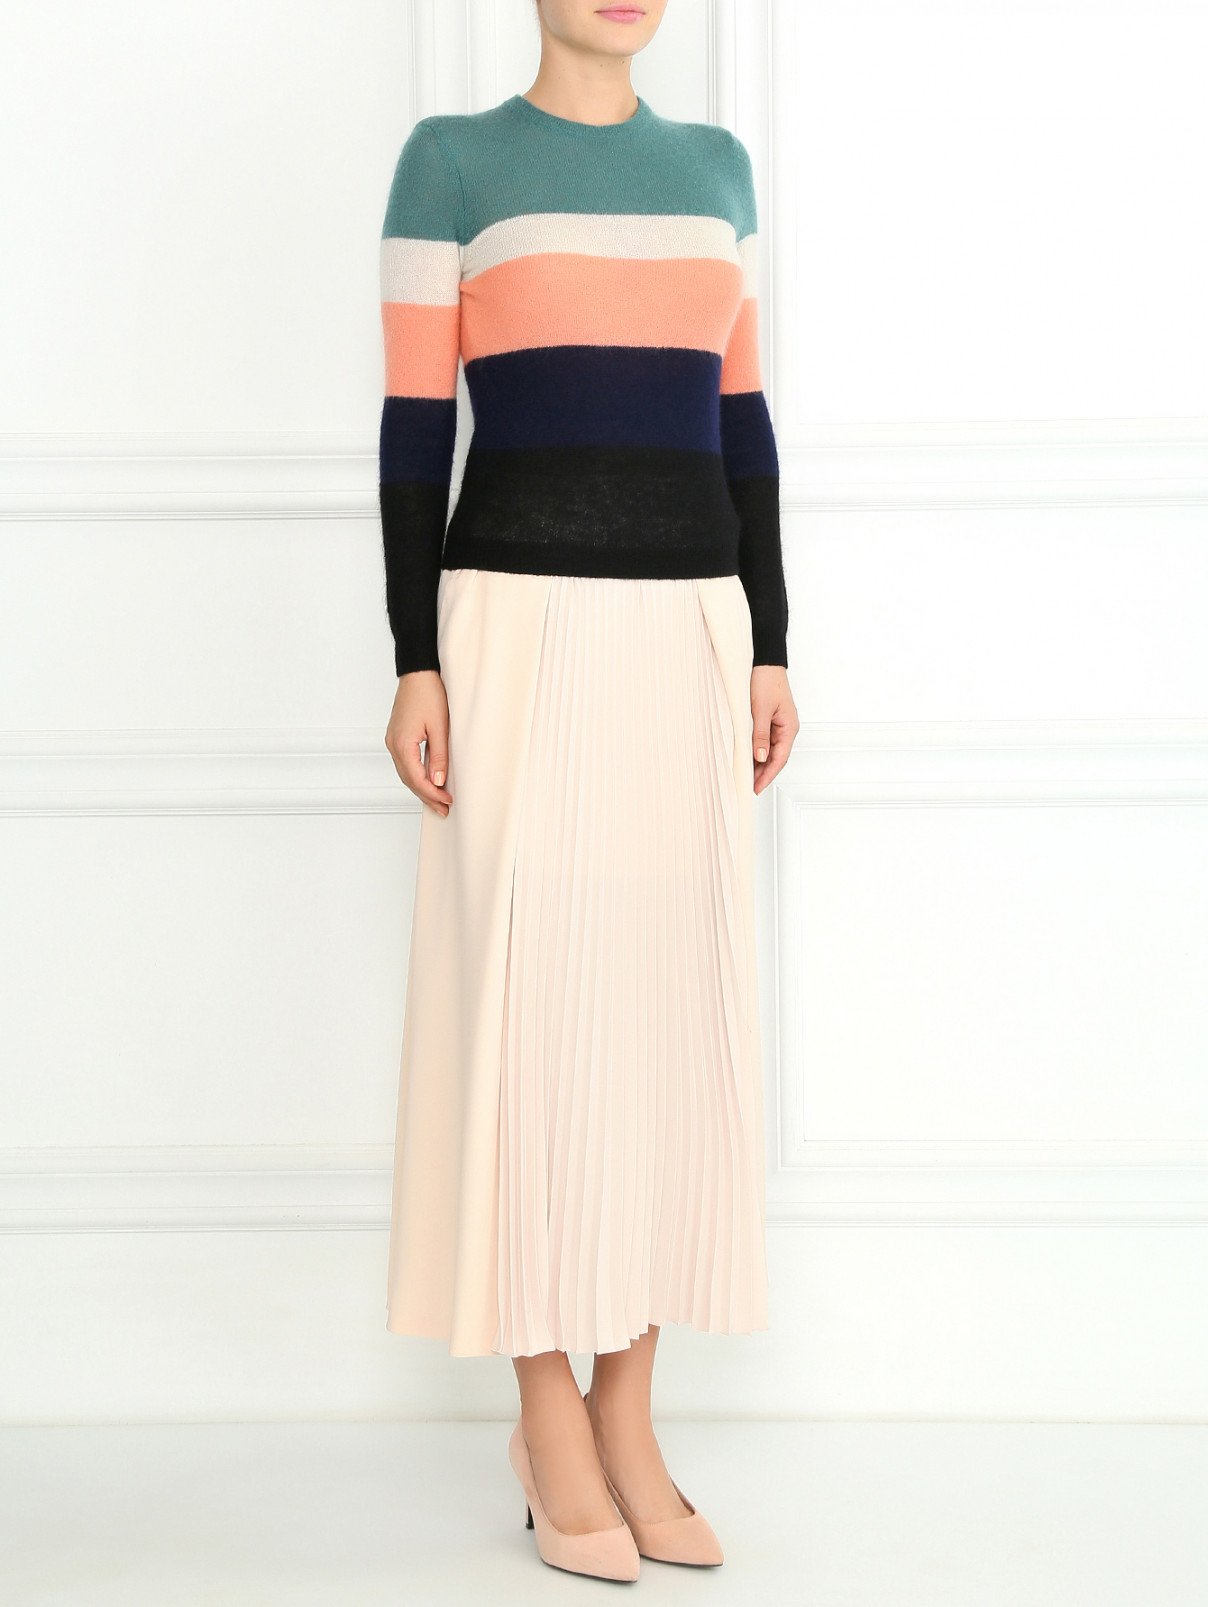 Гофрированная юбка-макси Cedric Charlier  –  Модель Общий вид  – Цвет:  Розовый